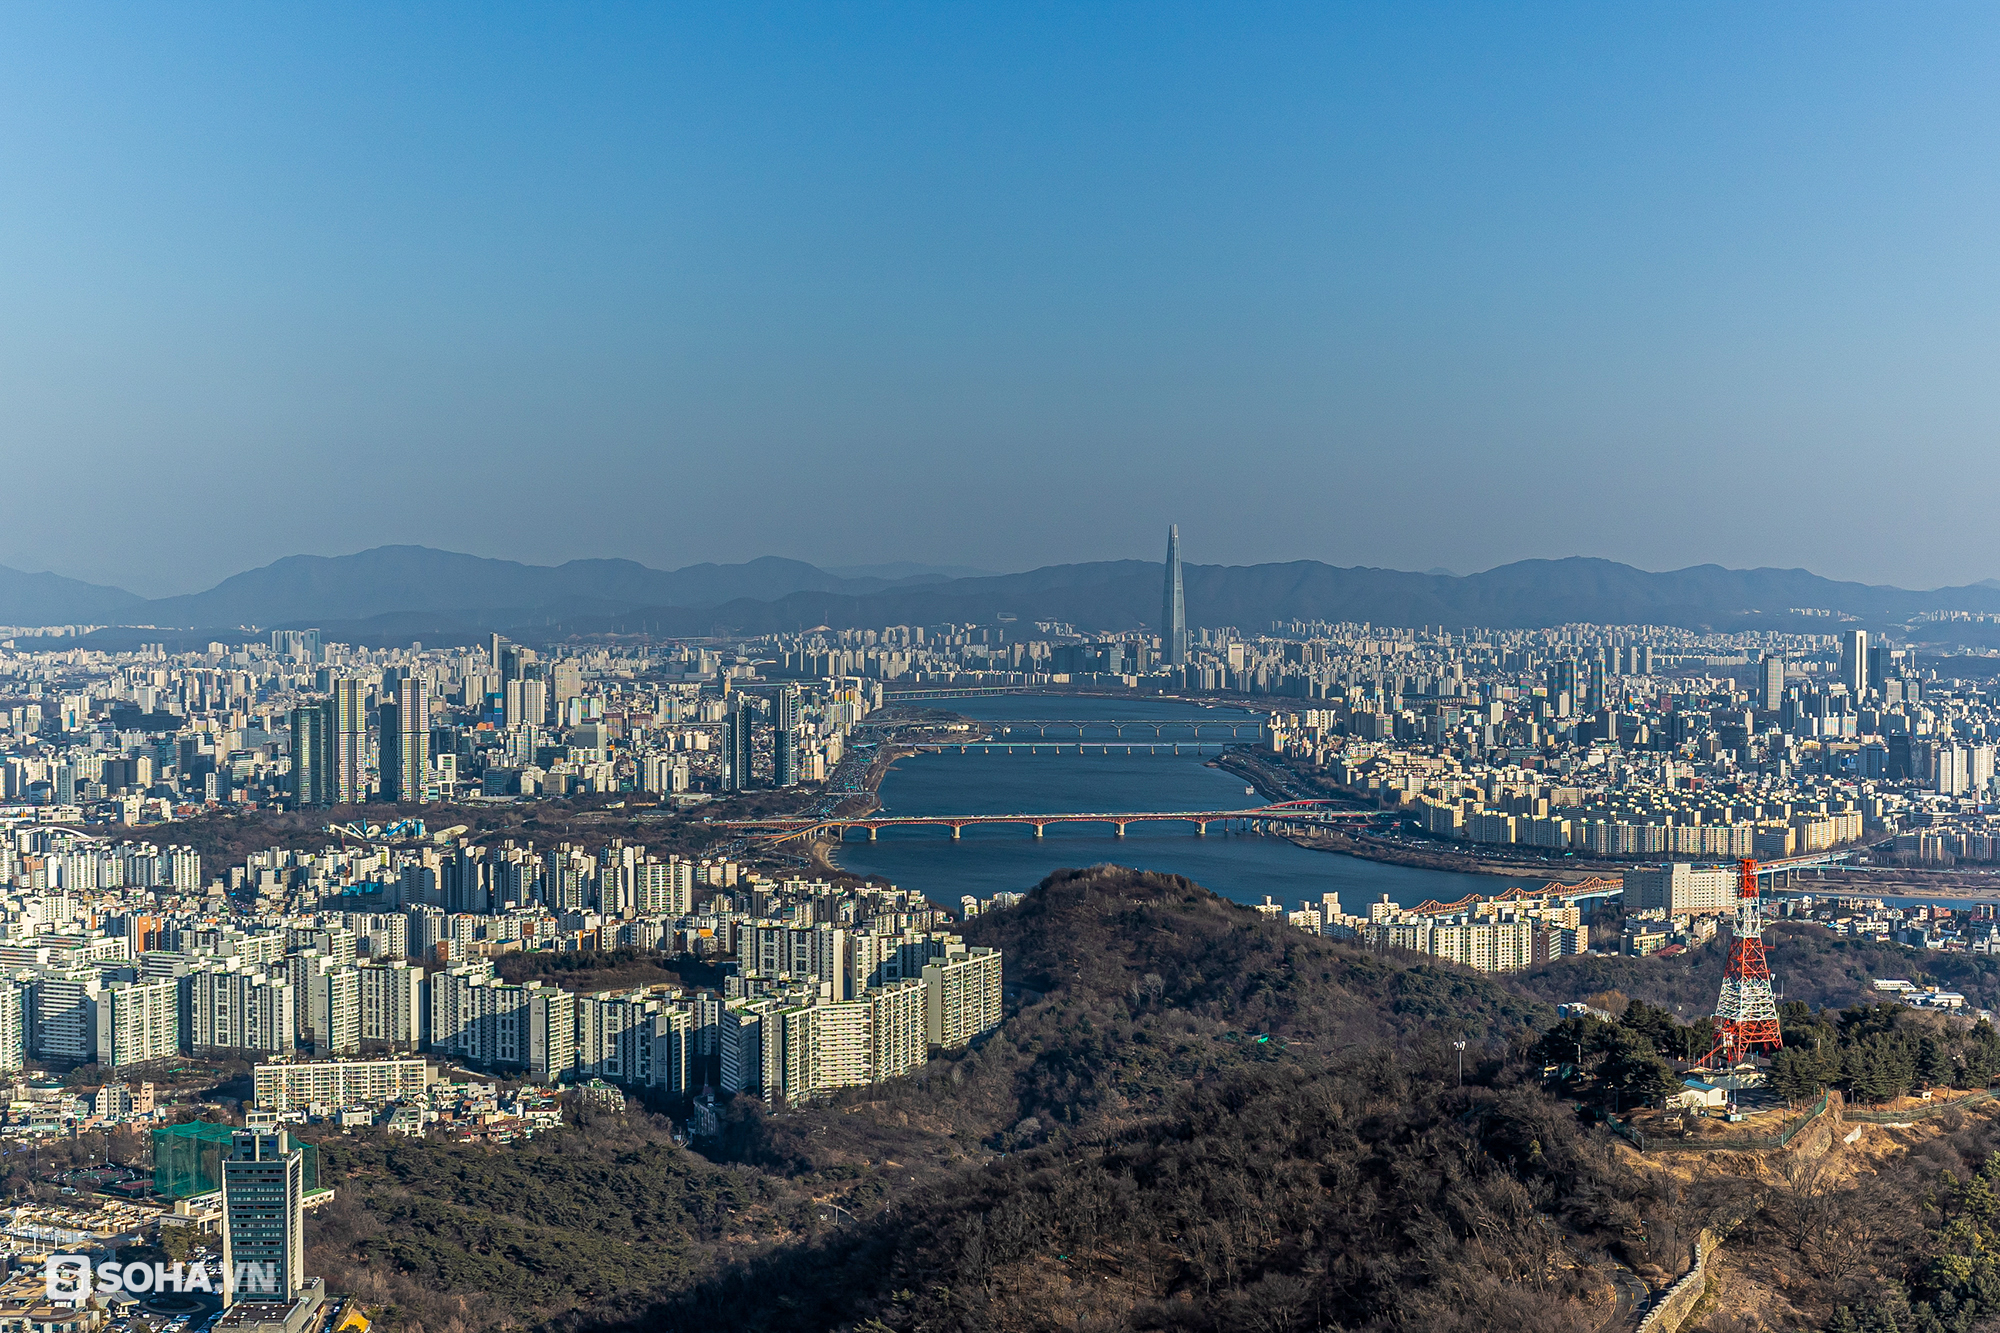 Tháp chọc trời Seoul: Cả nghìn móc khoá anh yêu em; nhìn thấy chữ Hà Nội ở nơi đặc biệt - Ảnh 8.